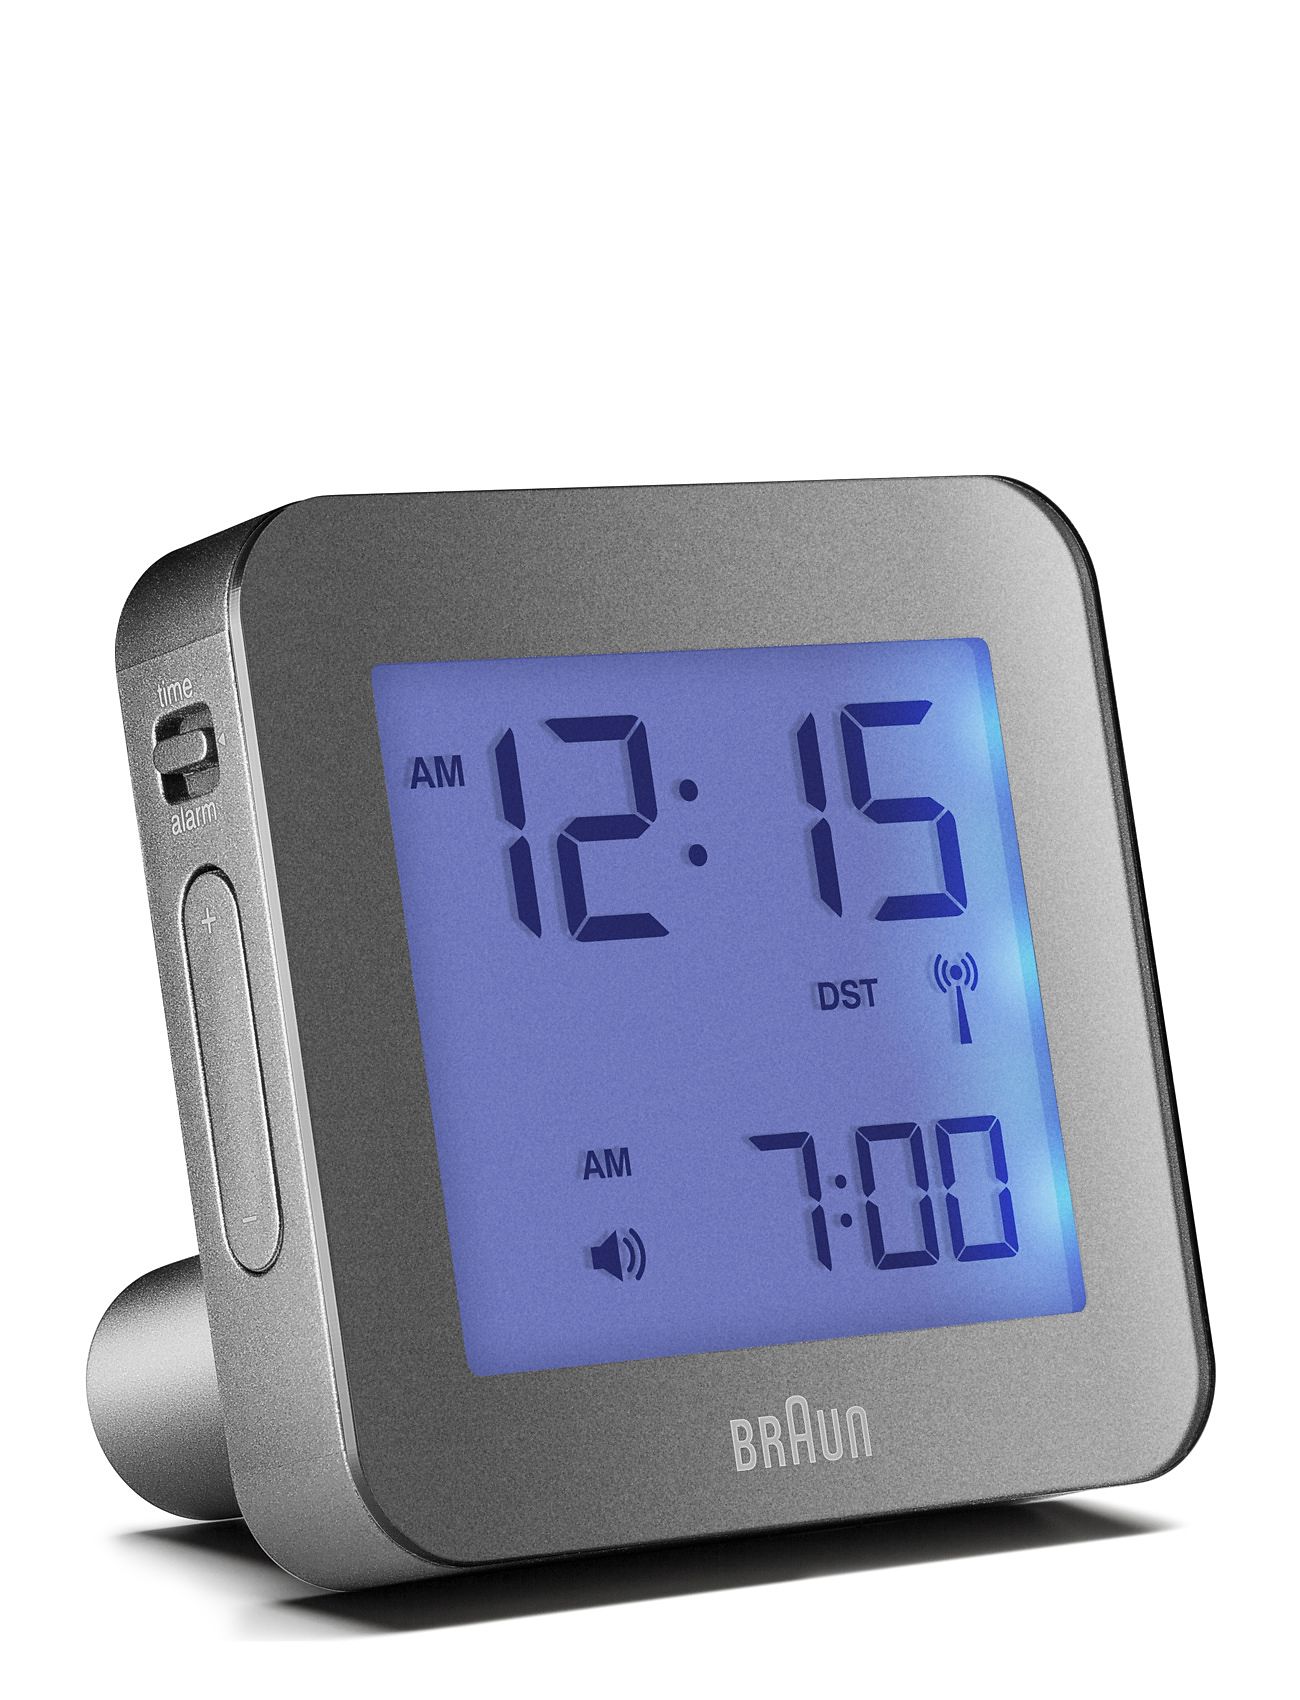 Braun "Braun Vækkeur Home Decoration Watches Alarm Clocks Silver Braun"